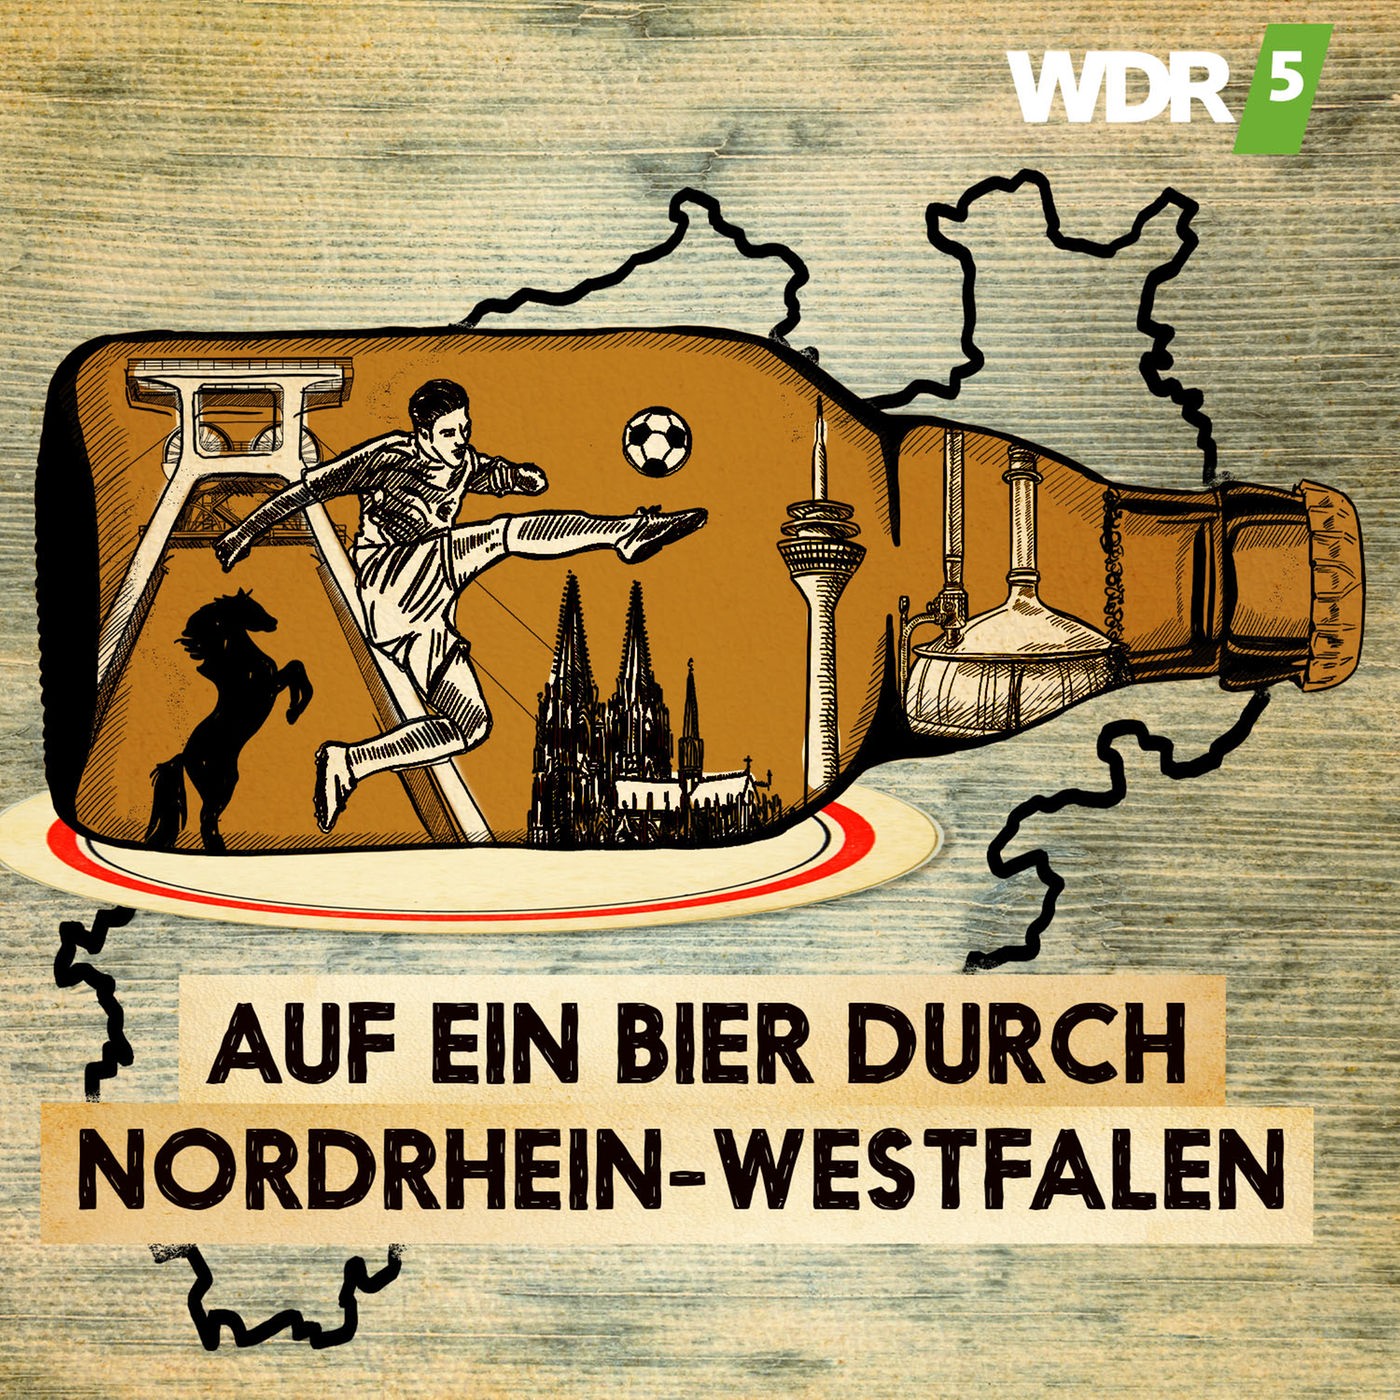 Auf ein Bier durch Nordrhein-Westfalen - Brauereien im Strukturwandel (Folge 1/3)